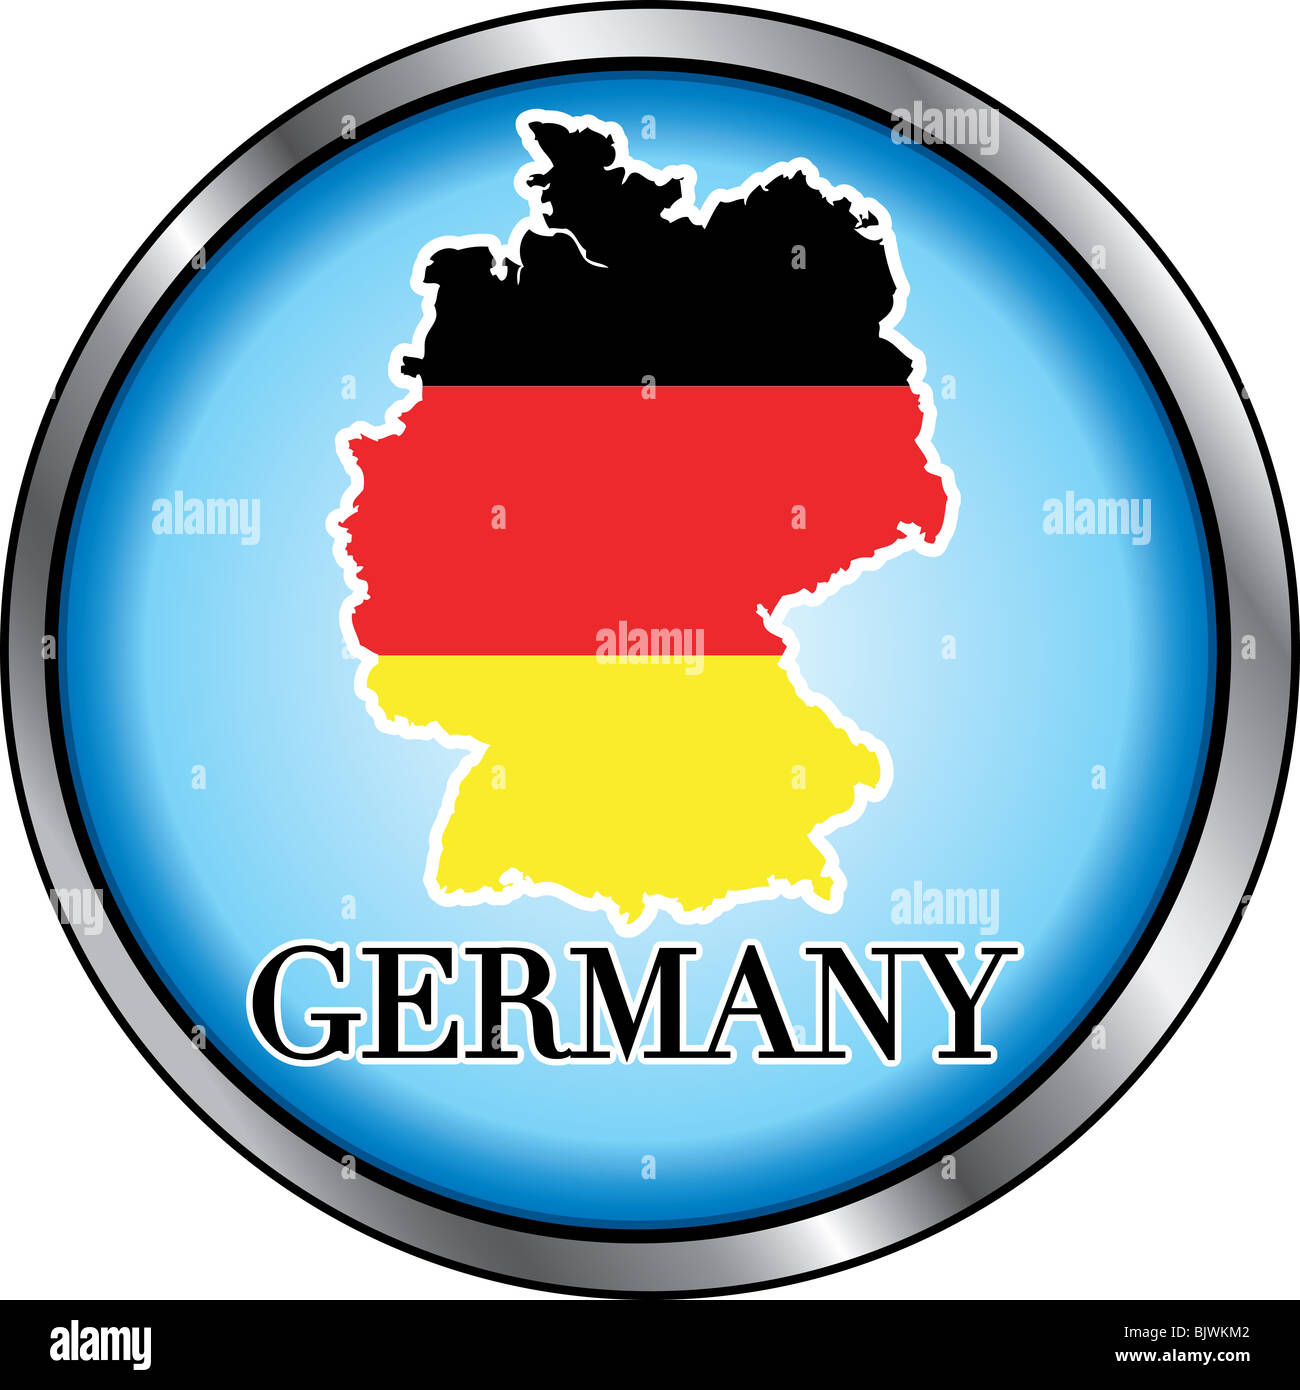 Illustrazione Vettoriale per la Germania, tasto rotondo. Usato Didot font. Foto Stock